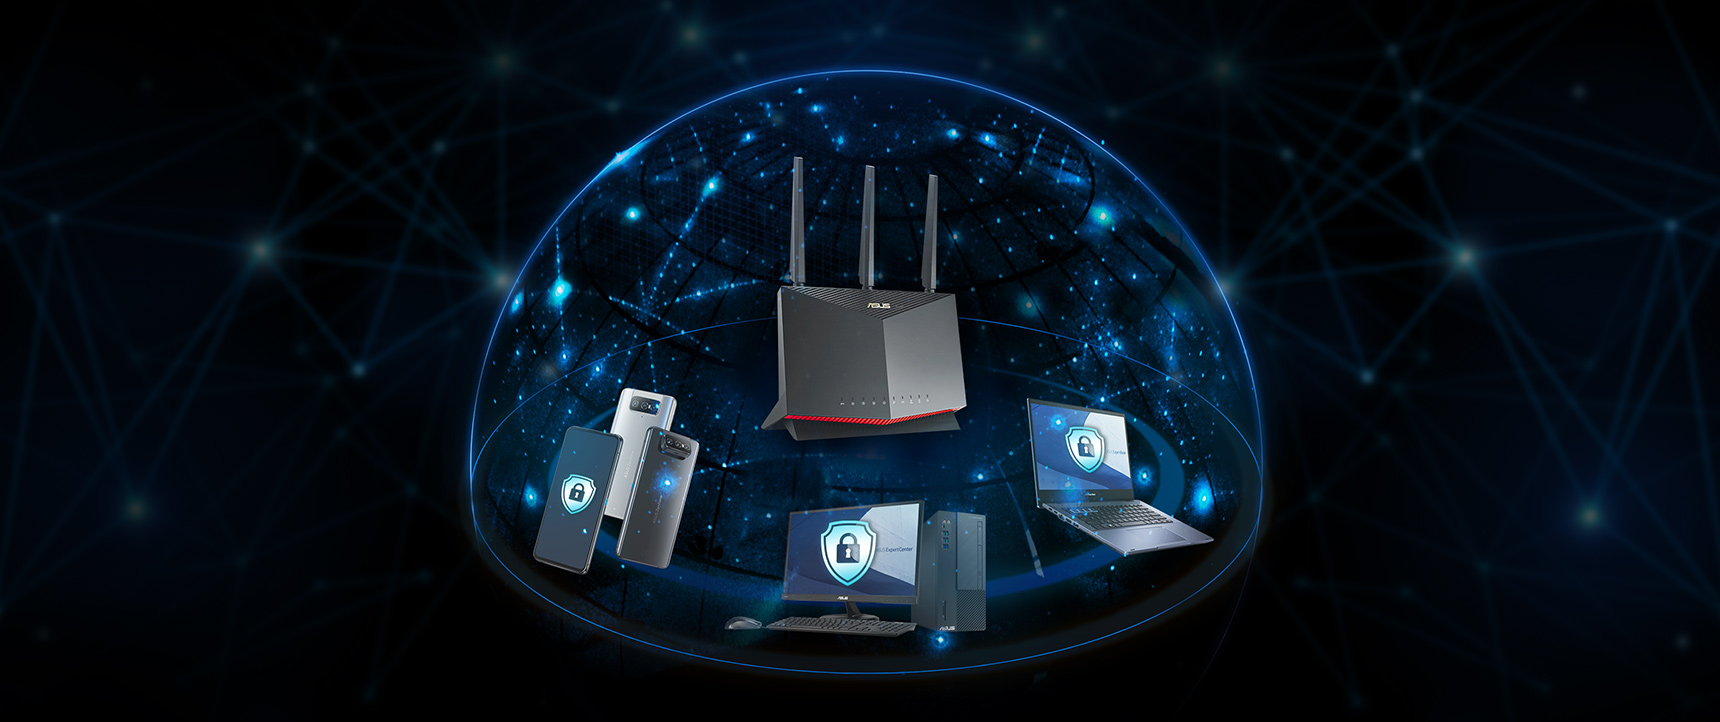 Hầu hết các router ASUS đều có công nghệ AiProtection được hợp tác với công ty Trend Micro™, đảm bảo rằng mọi thiết bị trong mạng doanh nghiệp của bạn đều được bảo vệ